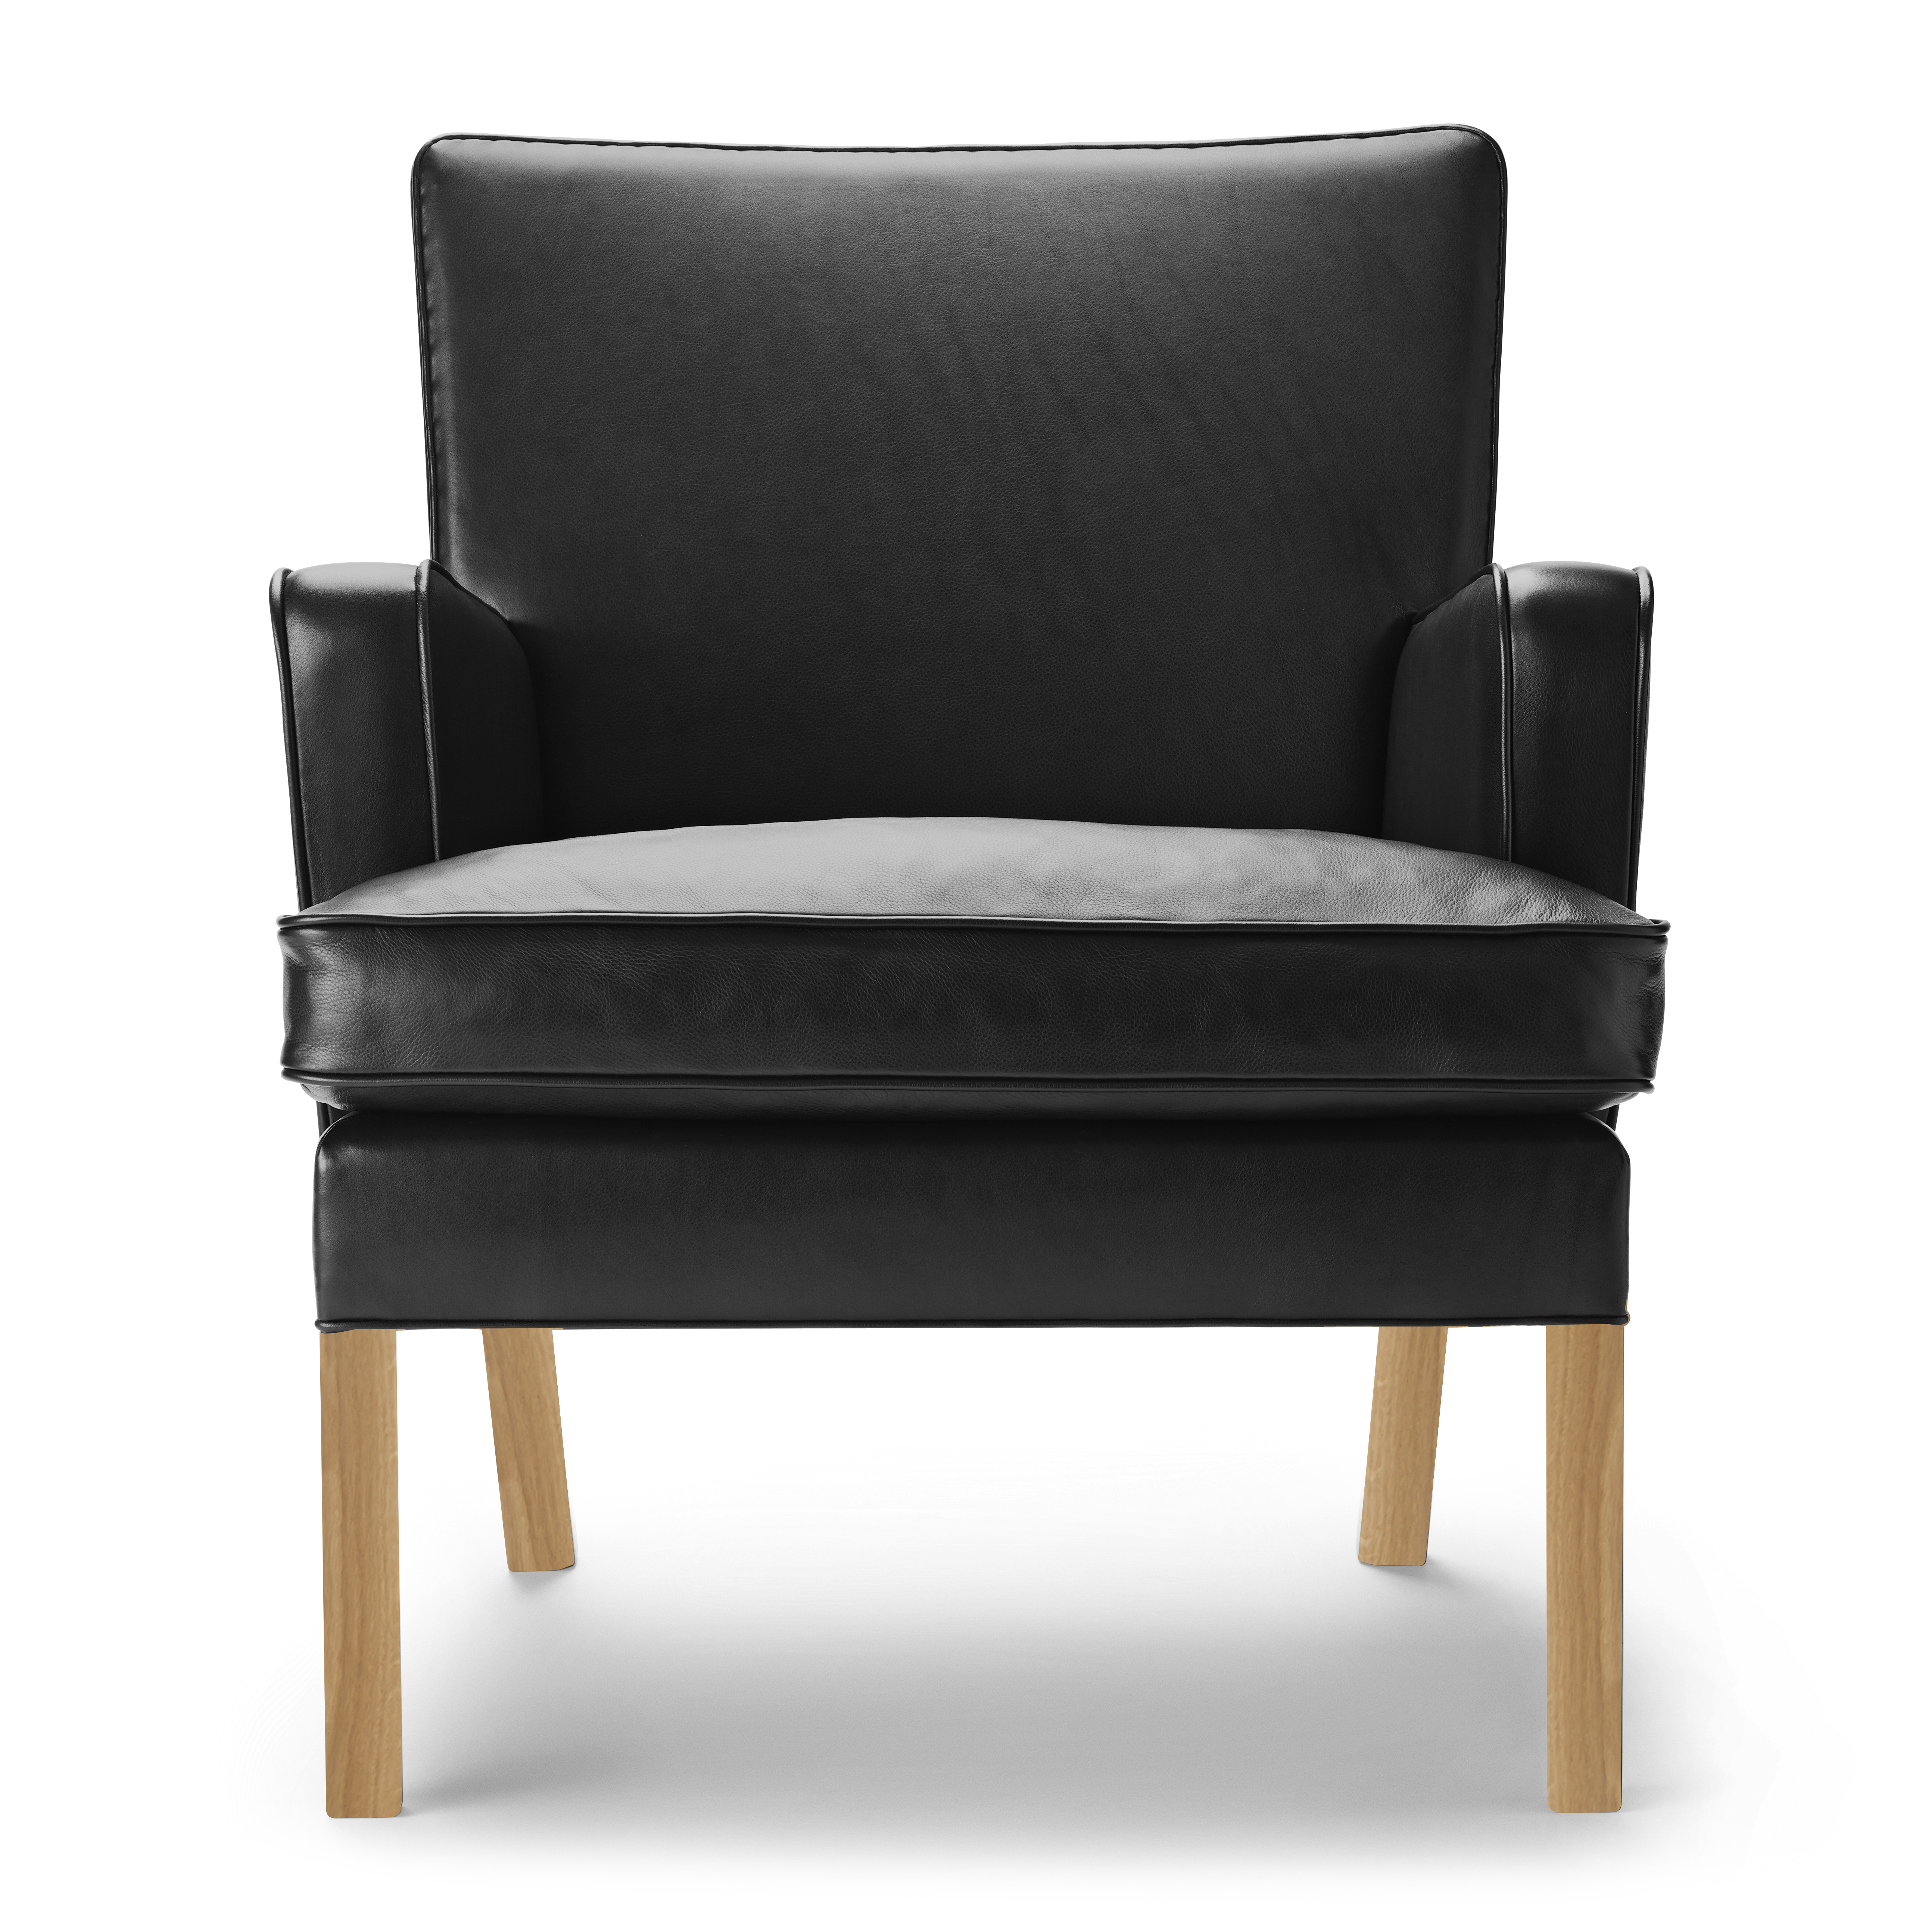 KK53130 | Easy Chair